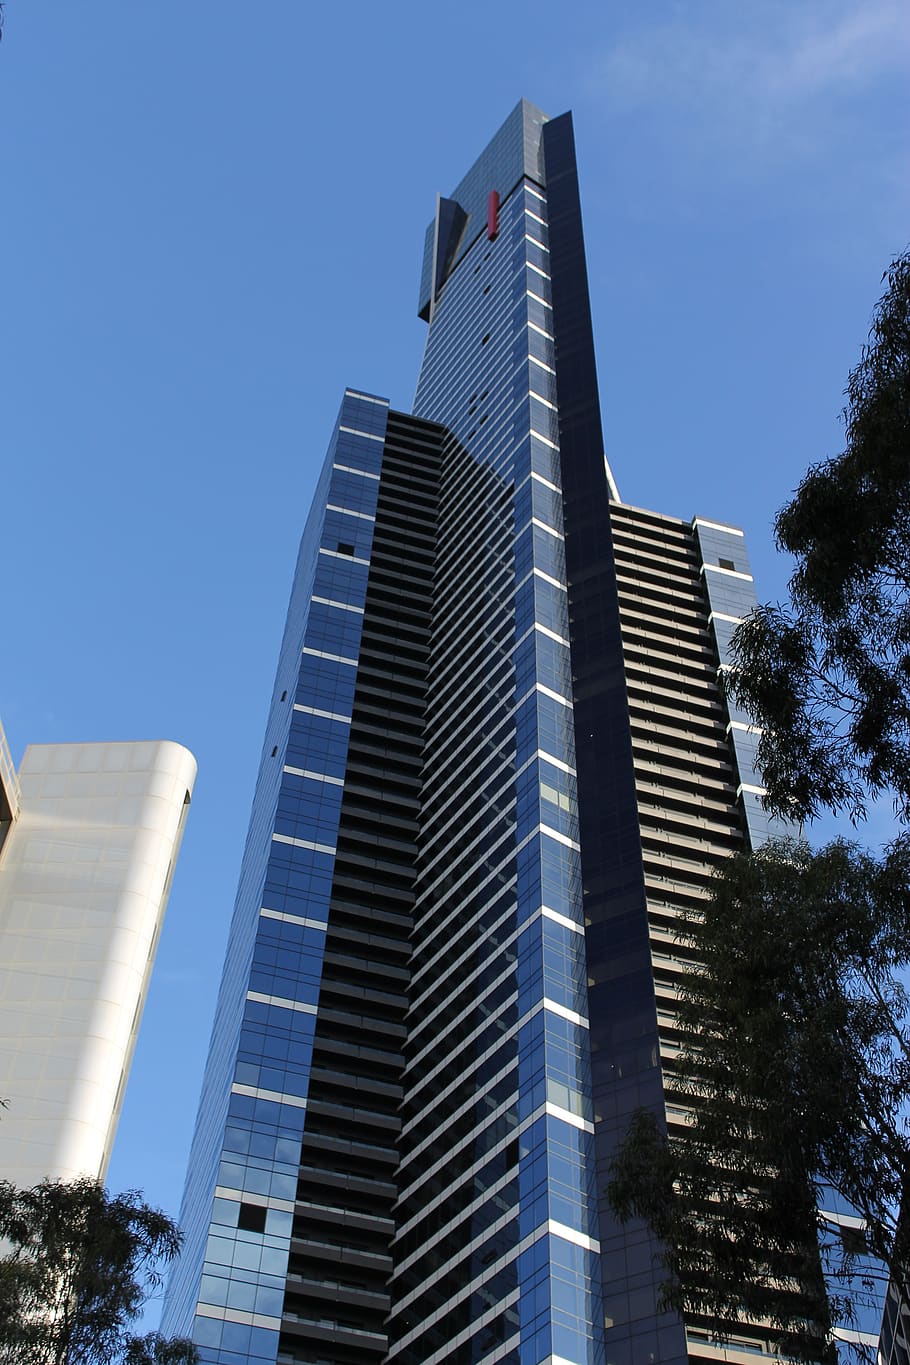 eureka tower, australia, melbourne, city, architecture, skyscraper, buildings, urban, built structure, building exterior